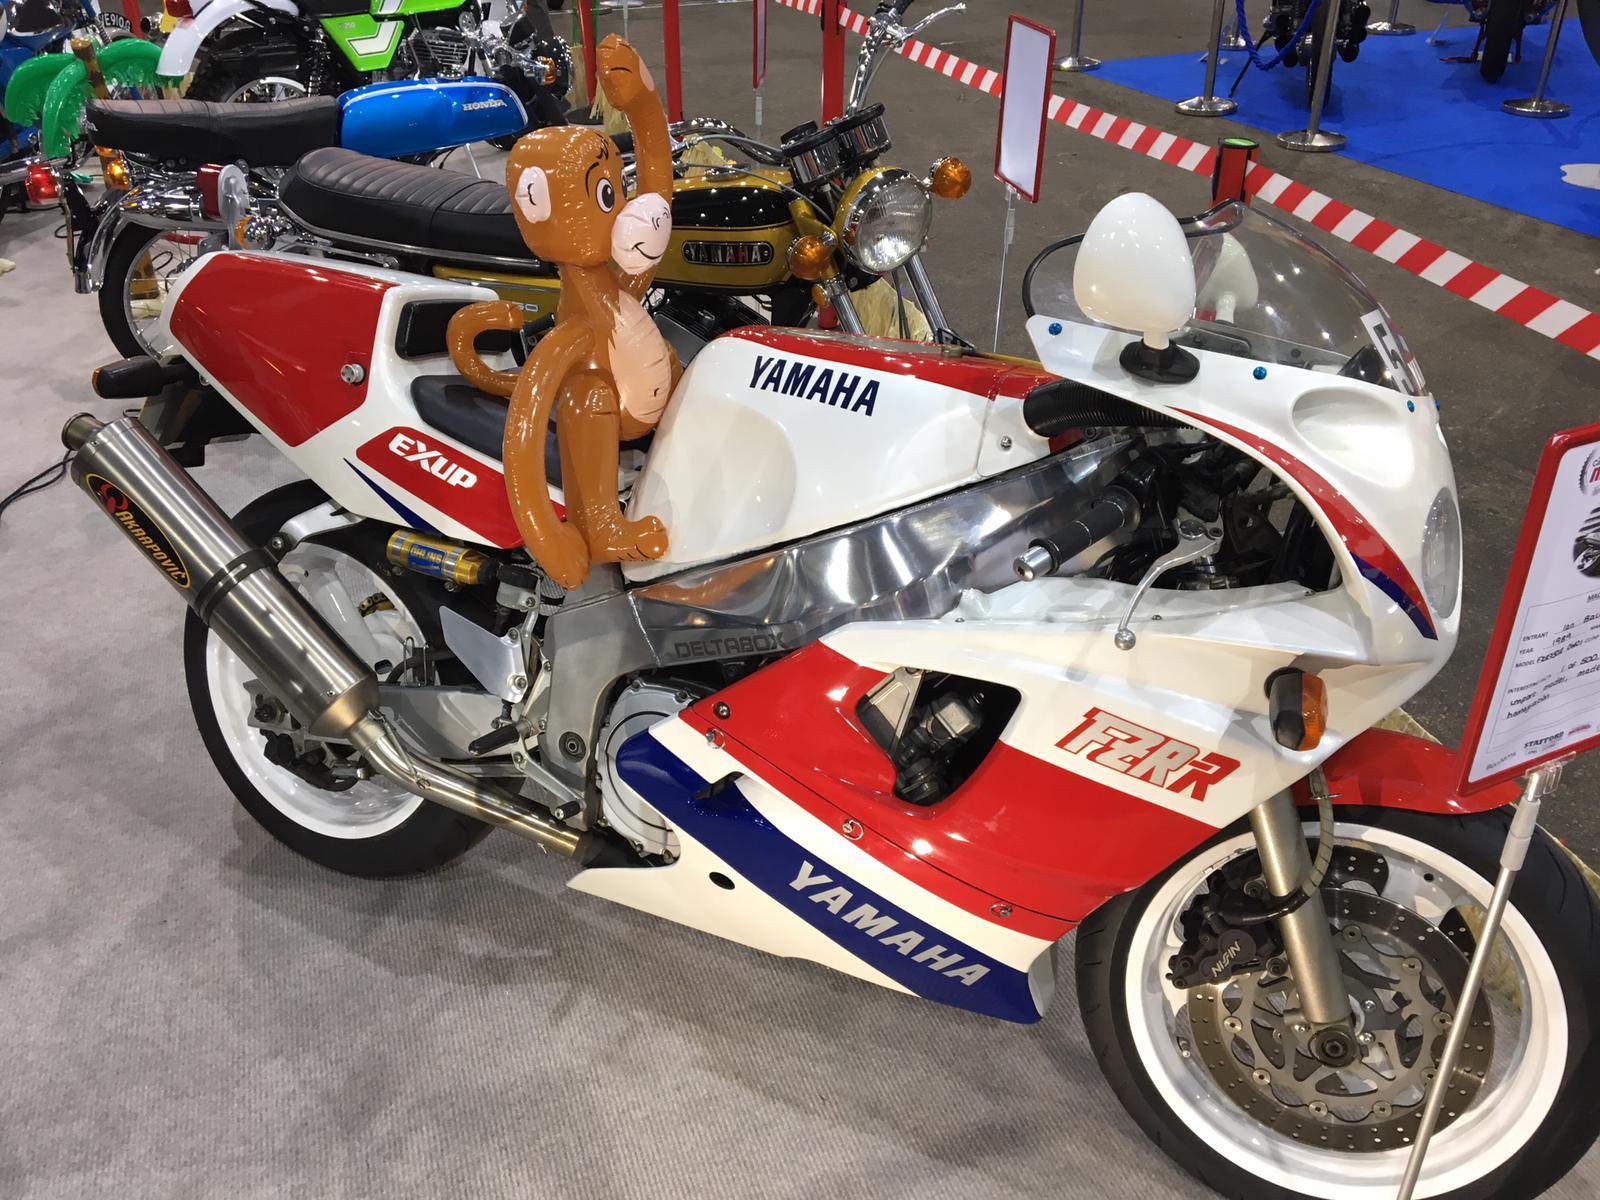 Yamaha driven by a monkey!